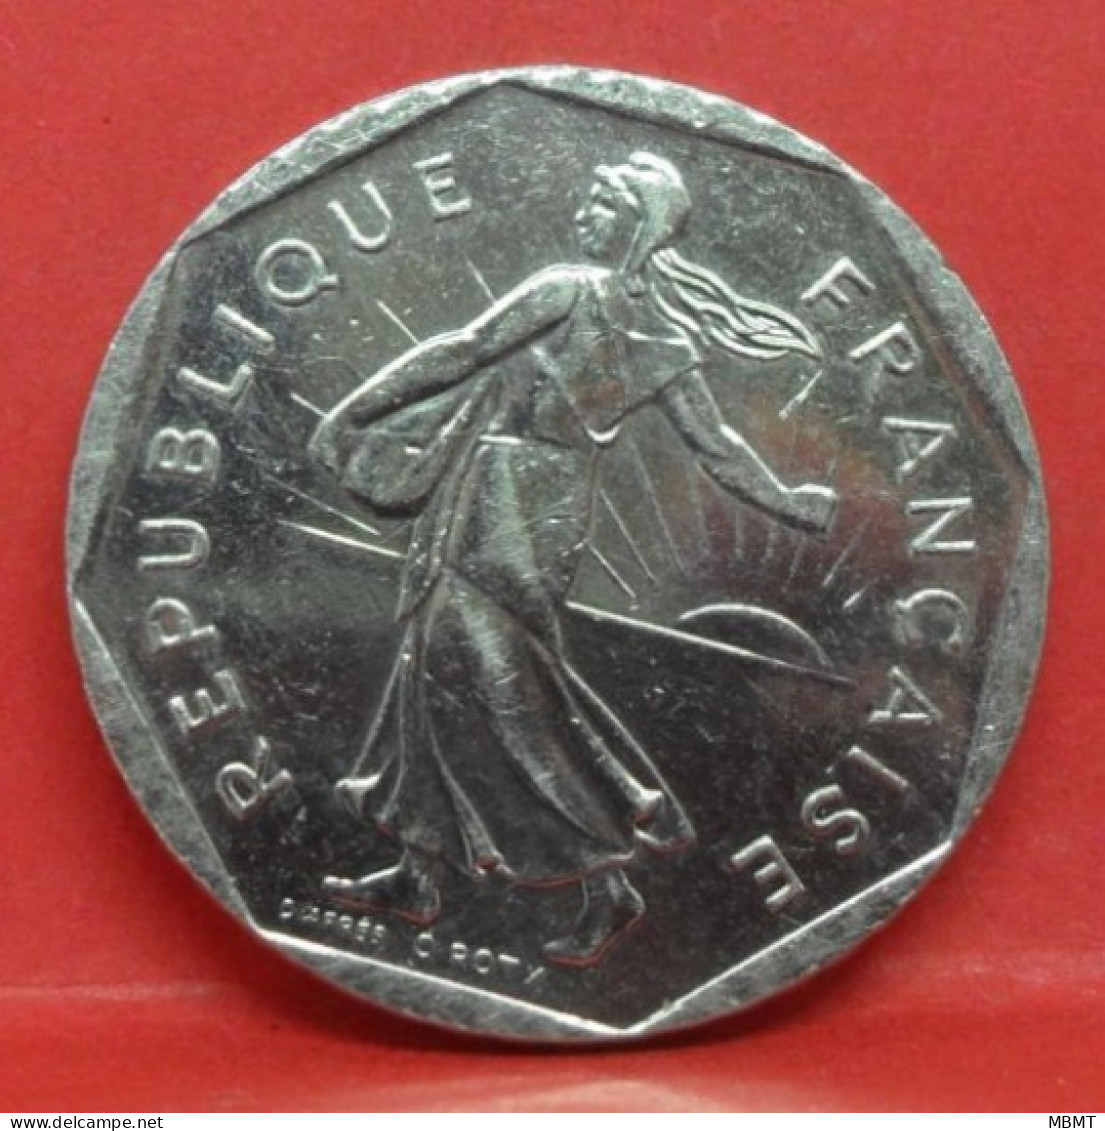 2 Francs Semeuse 2000 - SPL - Pièce Monnaie France - Article N°816 - 2 Francs